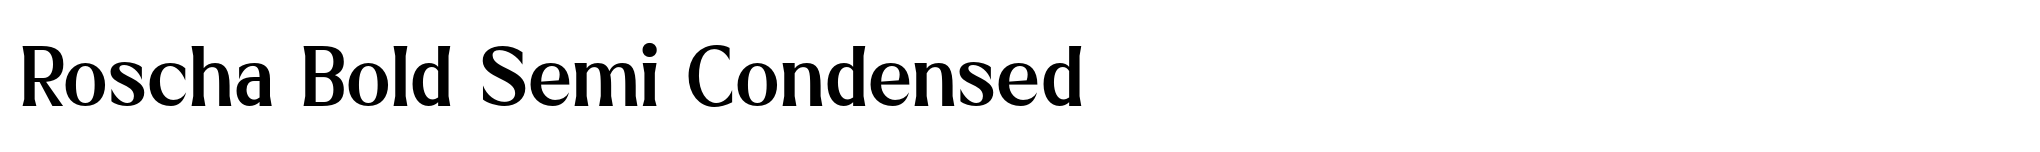 Roscha Bold Semi Condensed image